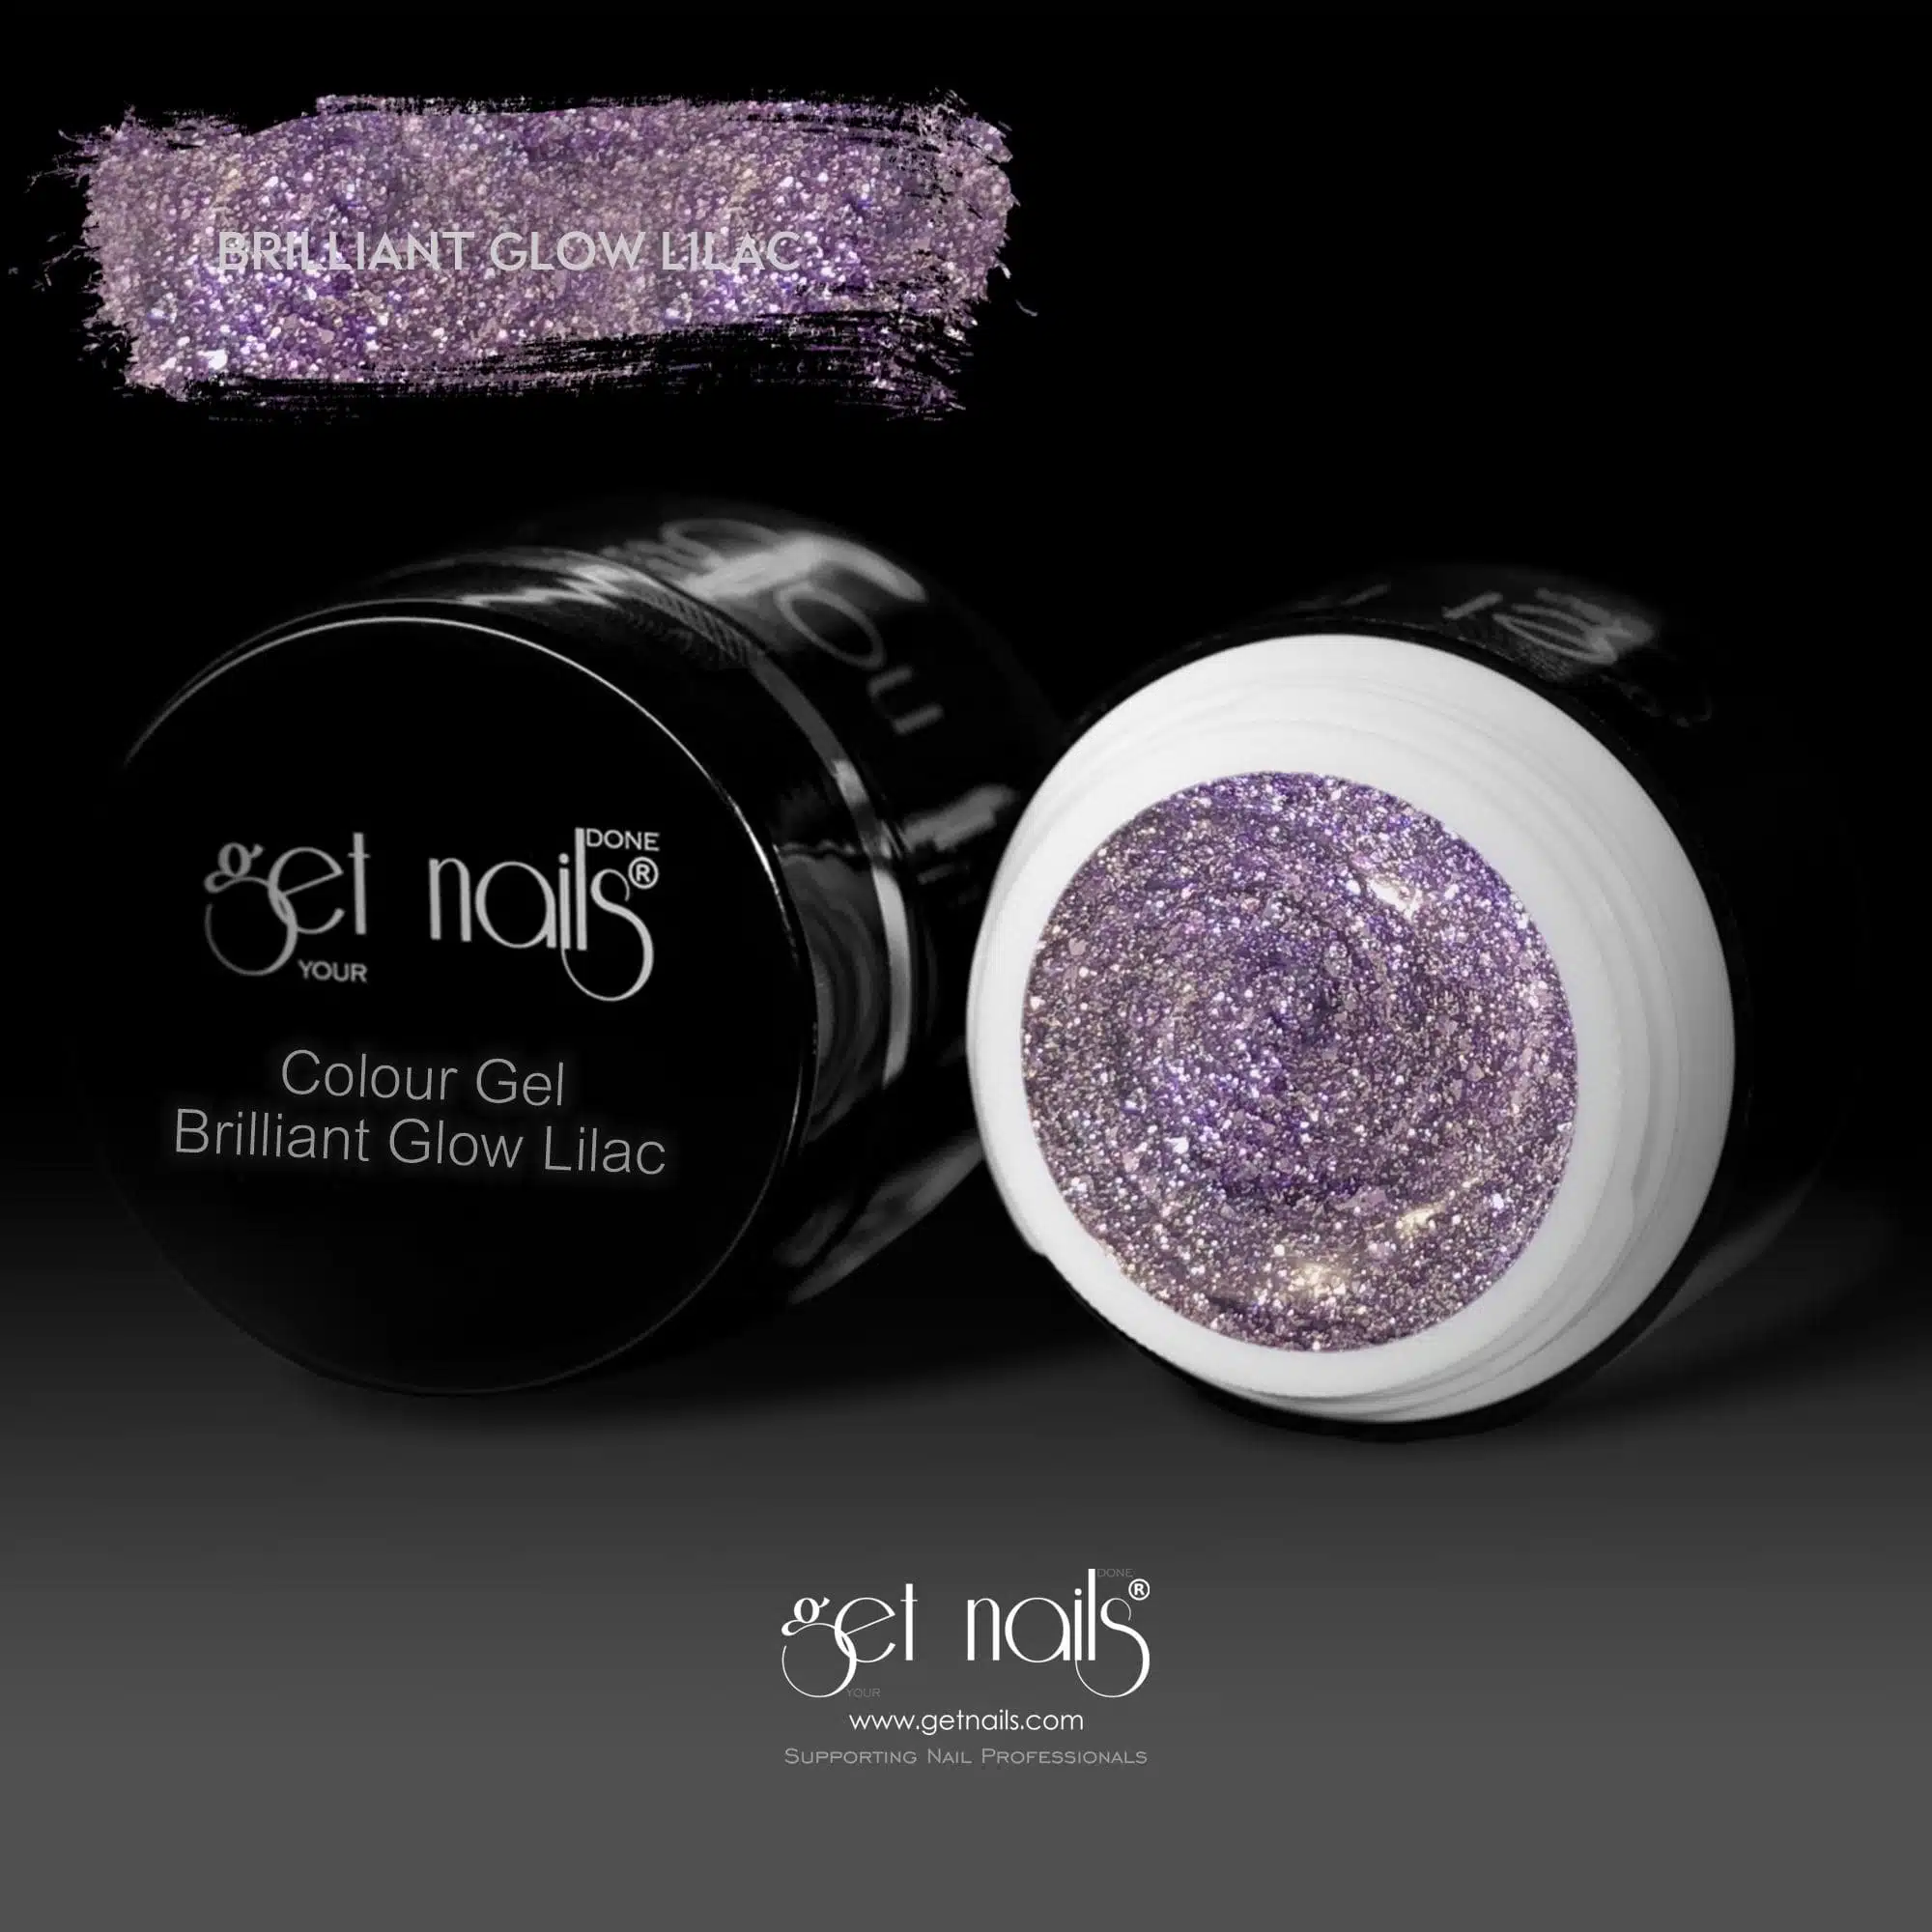 Get Nails Austria - Colour Gel Brilliant Glow Lilac 5g